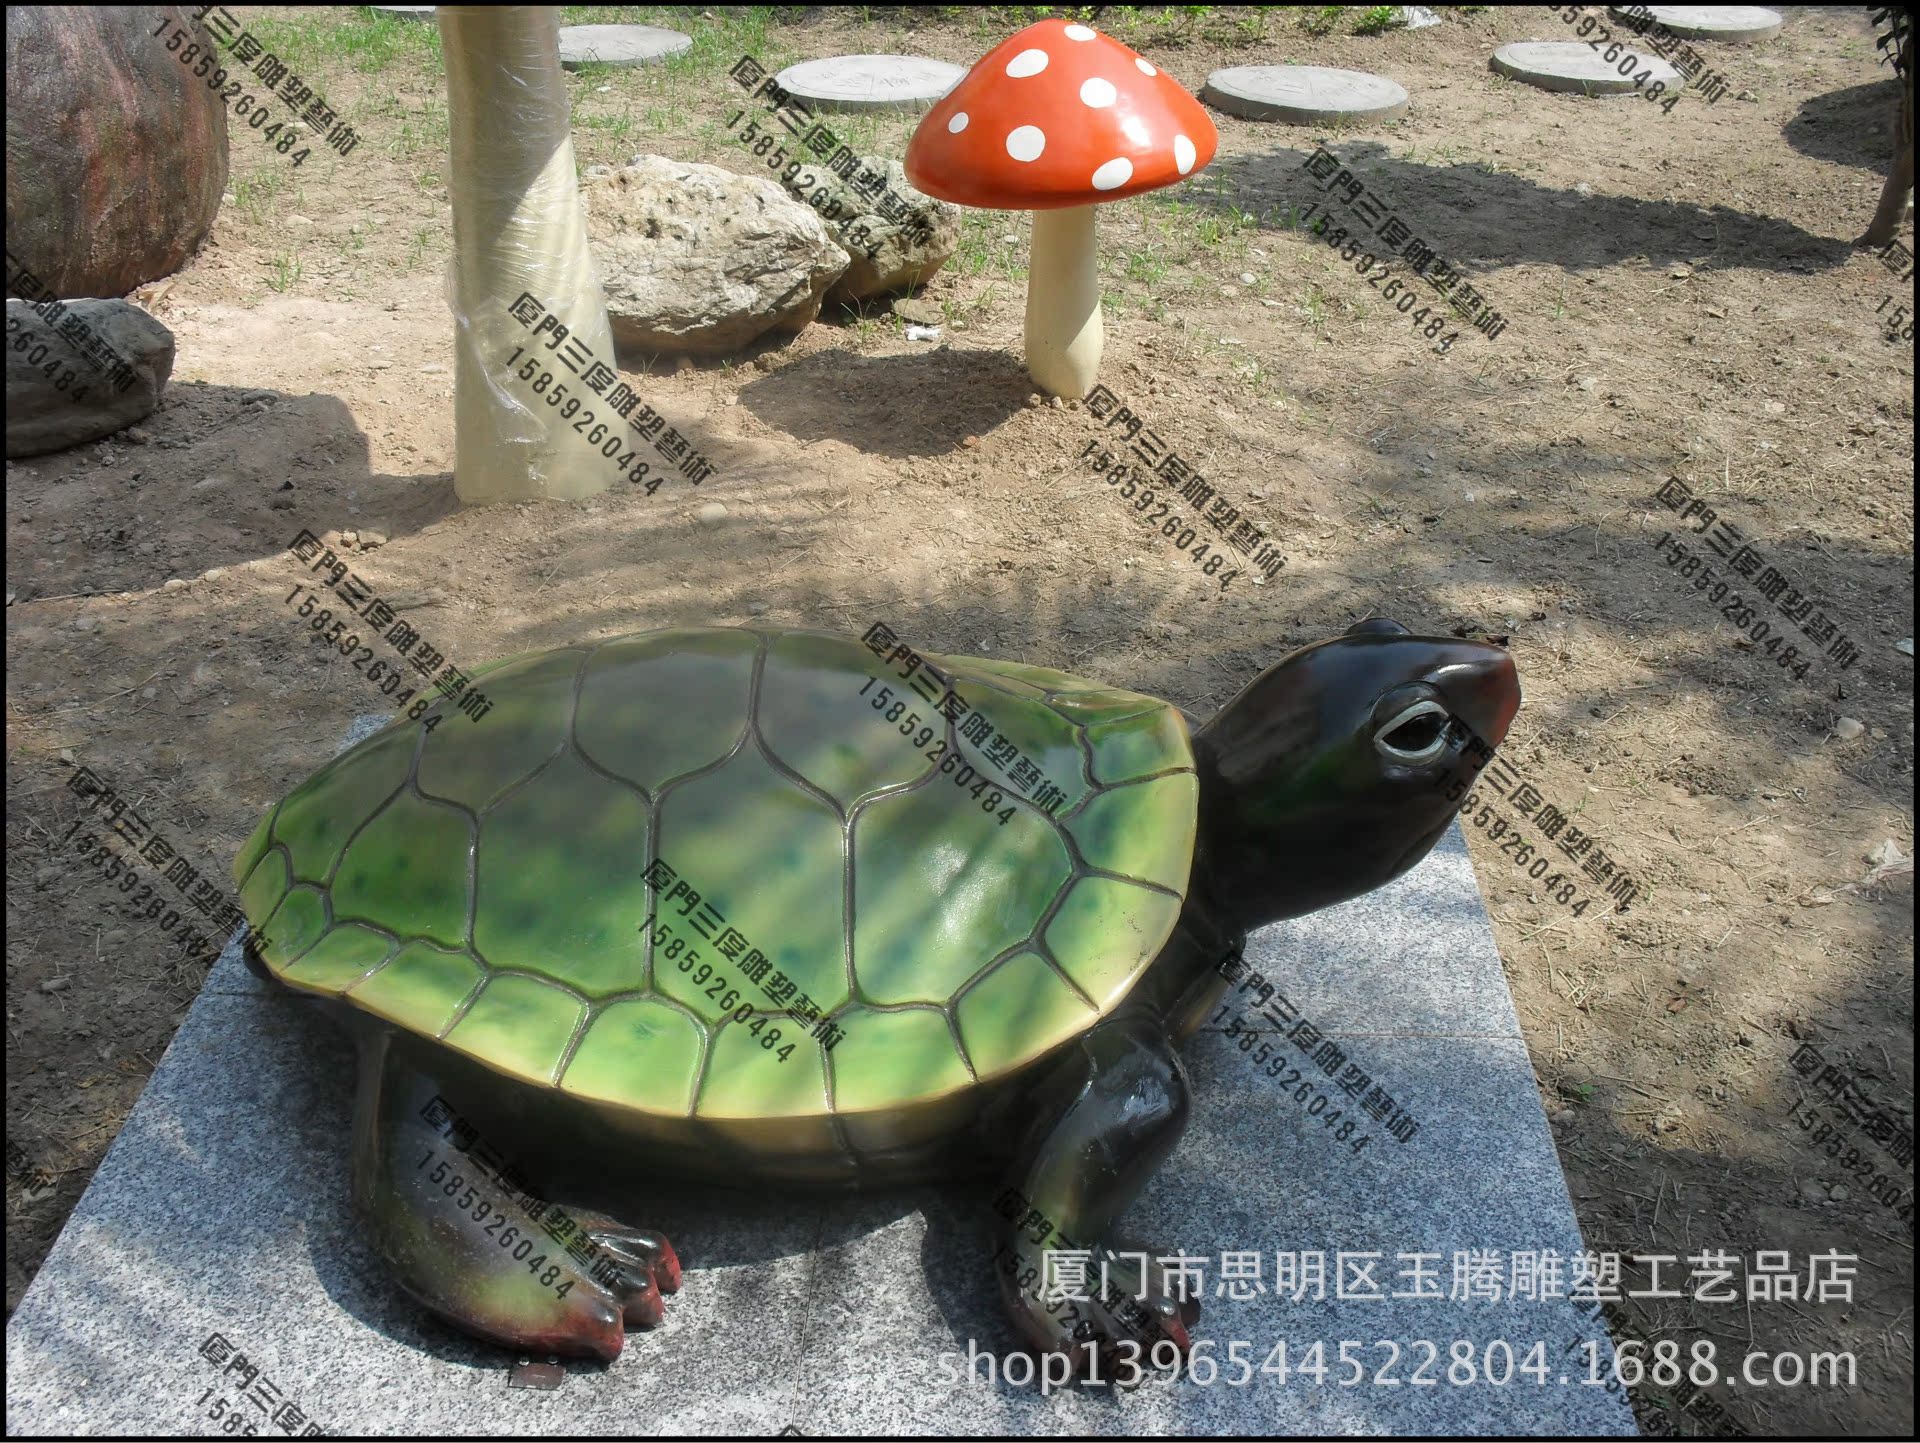 玻璃鋼仿真海龜動物模型/玻璃鋼校園教學模型